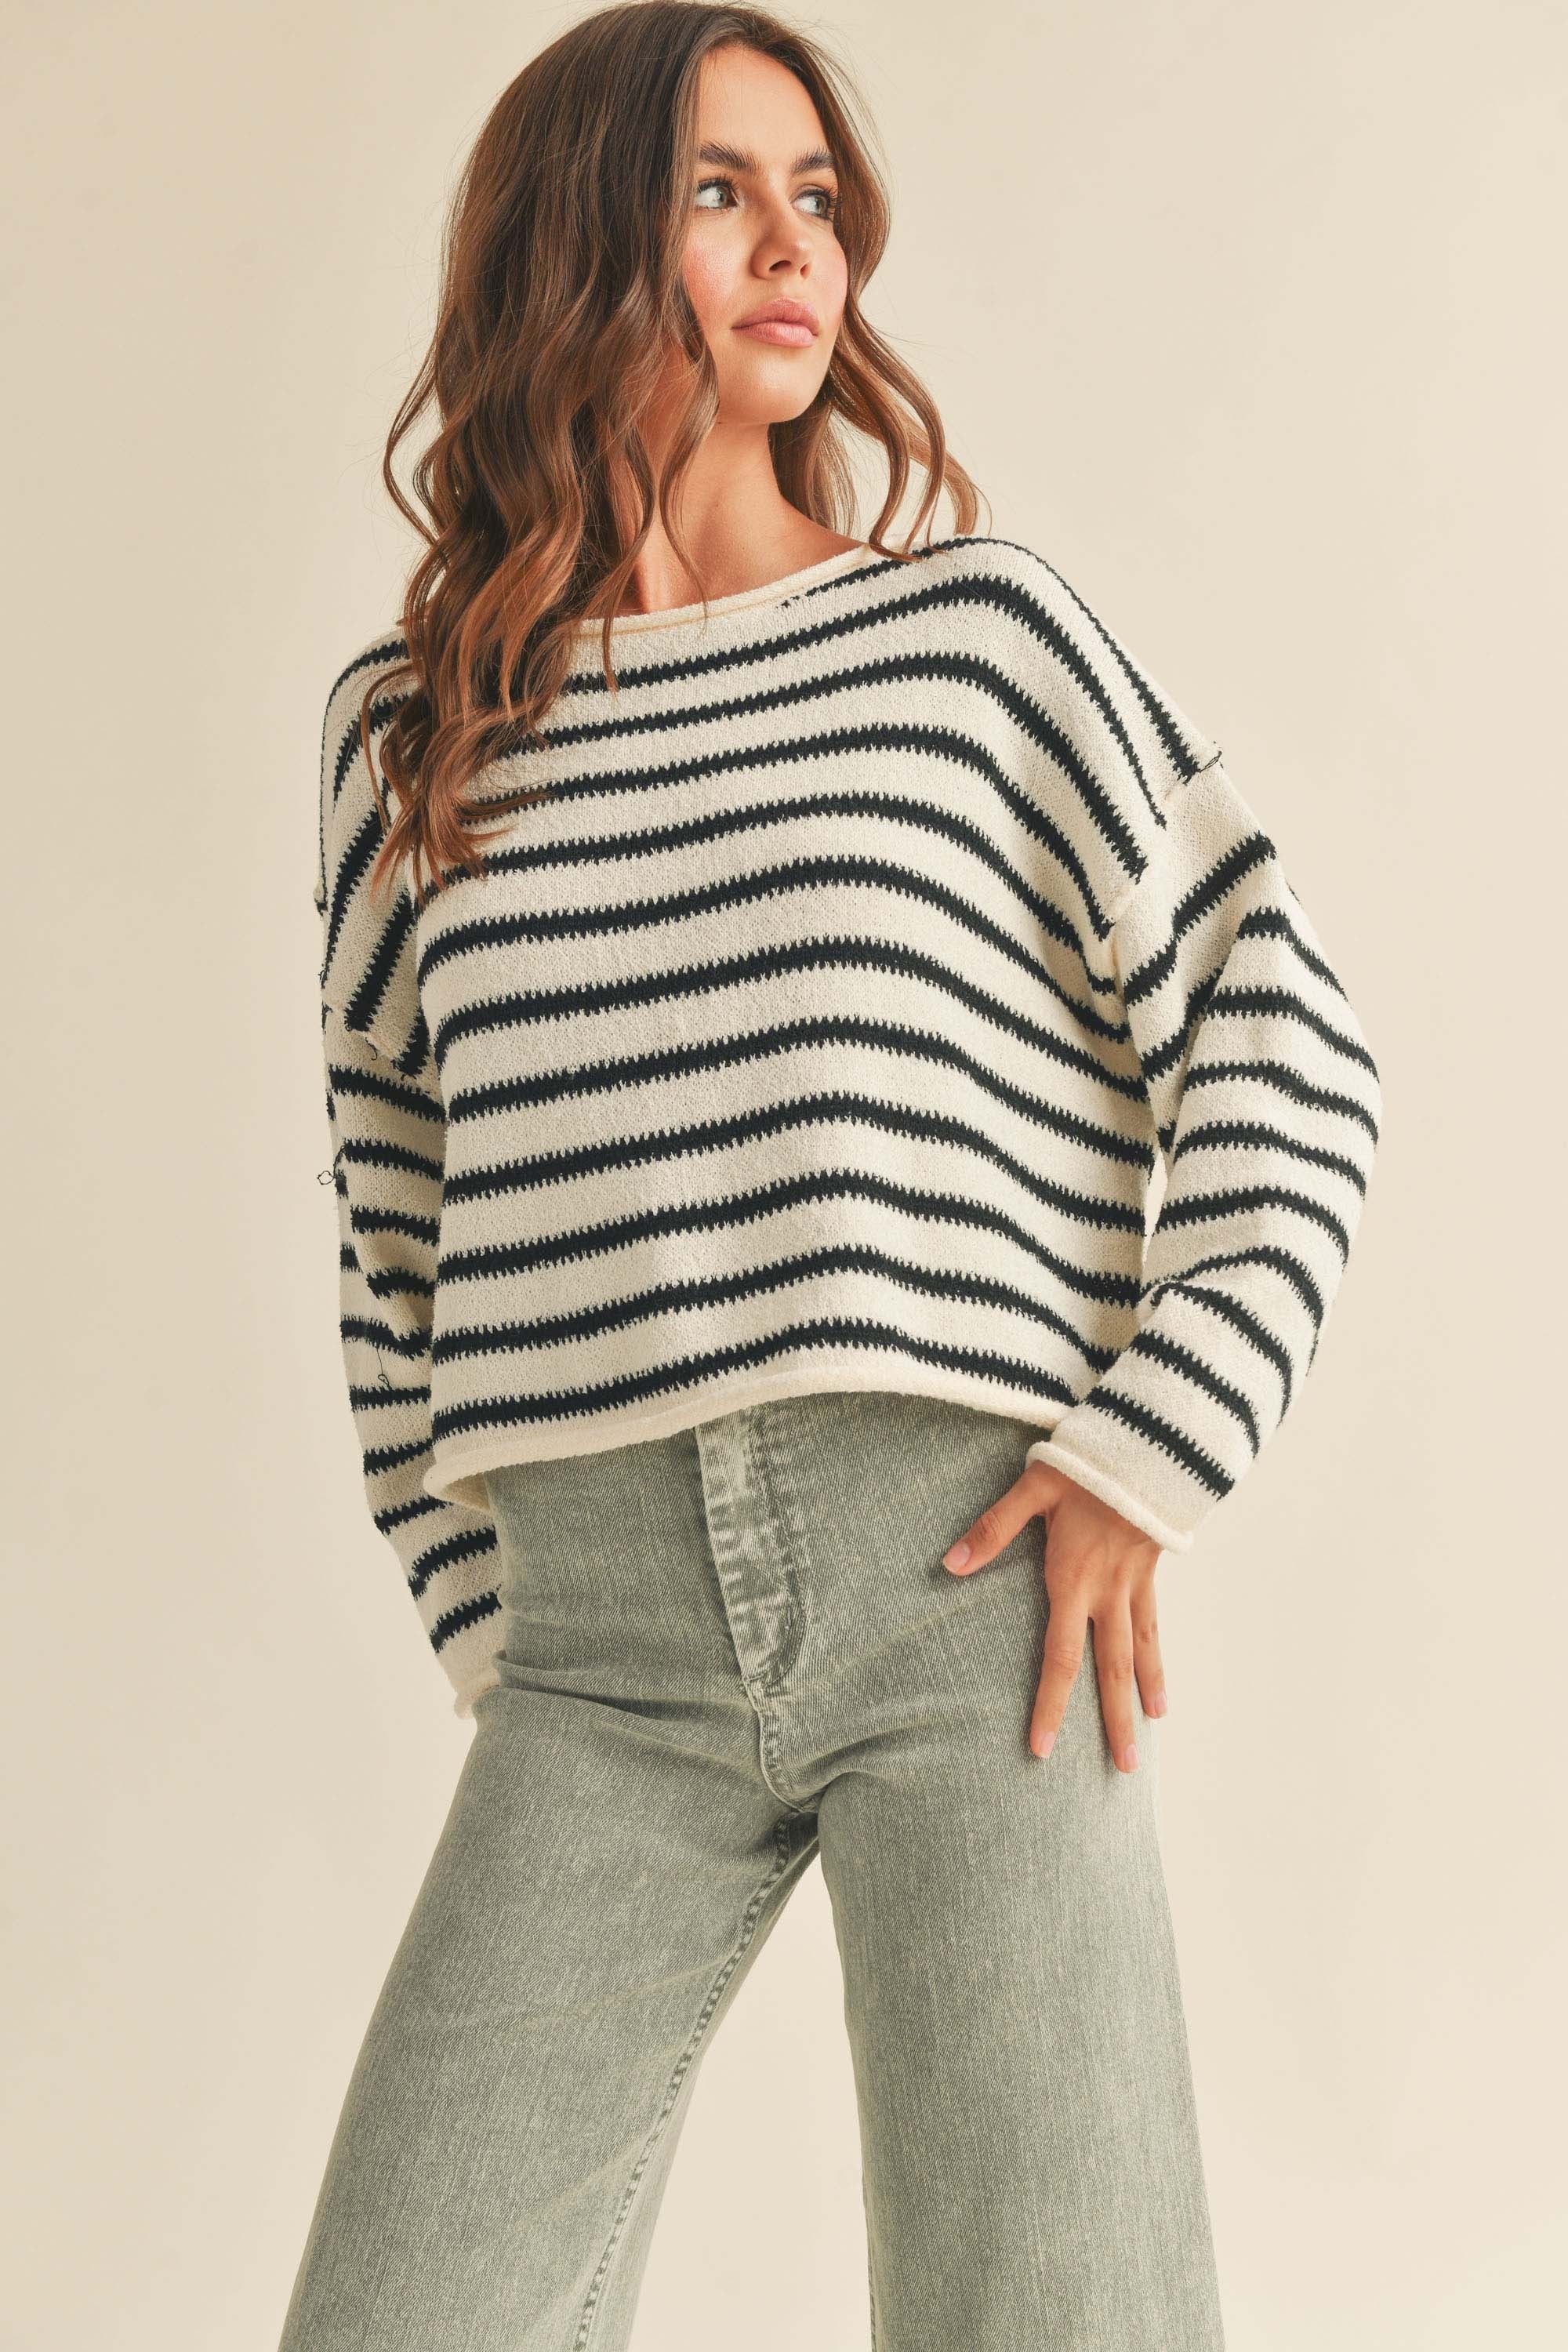 striped boxy sweater